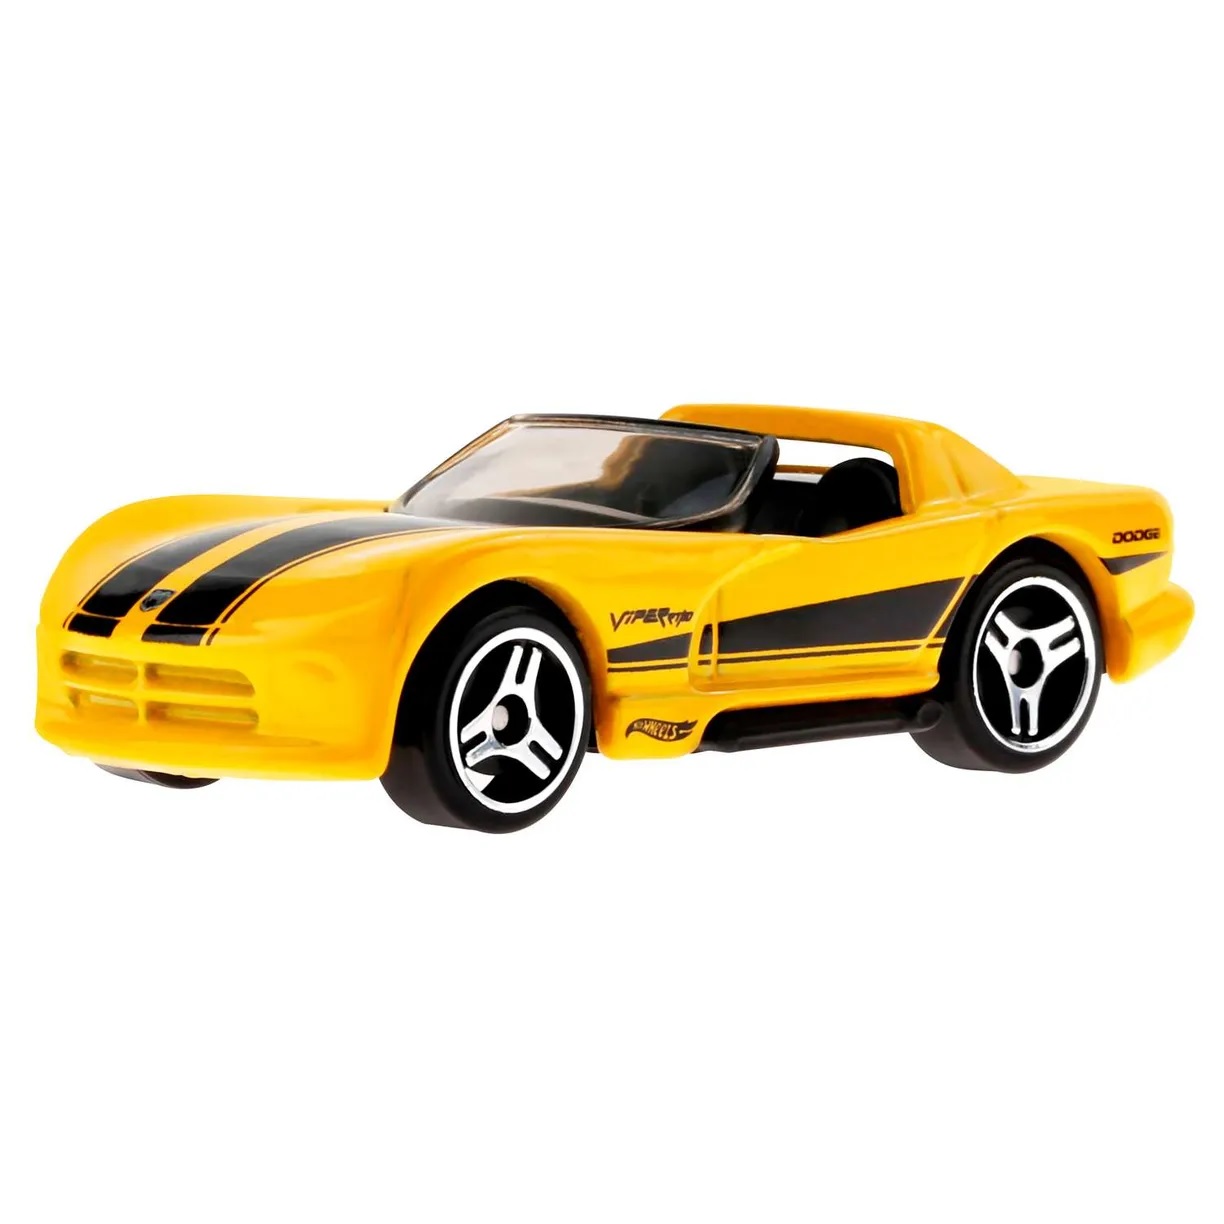 Машинка Hot Wheels HKH43 HW Roadsters 2023 Dodge Viper RT/10 Yellow 7/10